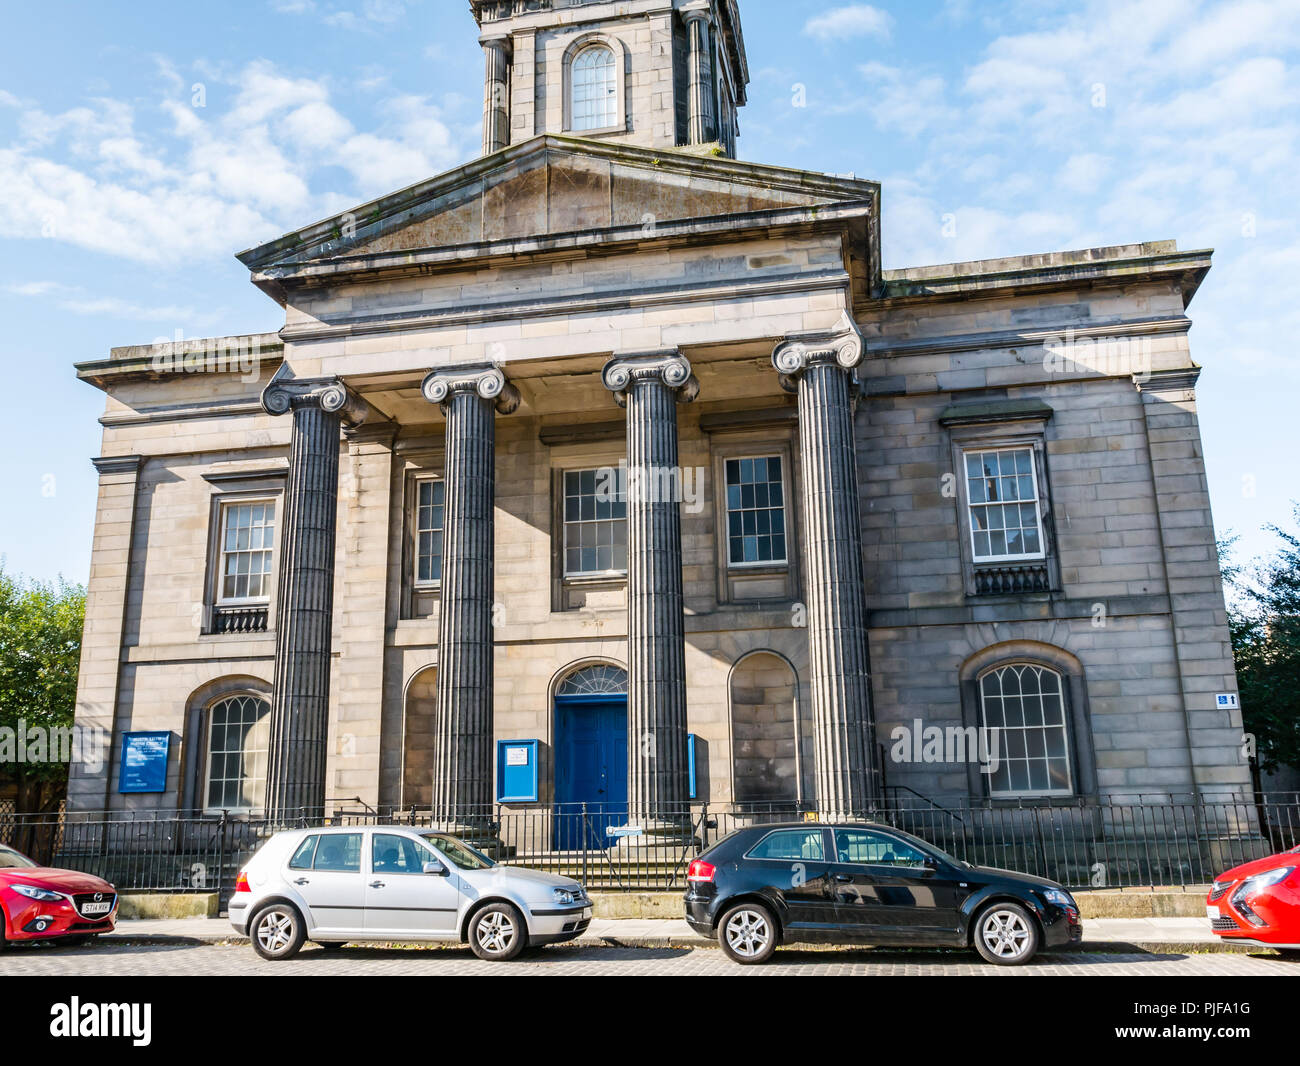 North Leith chiesa parrocchiale della Chiesa di Scozia, costruito 1816 con grande portico e colonne ioniche, Madera Street, Leith, Edimburgo, Scozia, Regno Unito Foto Stock